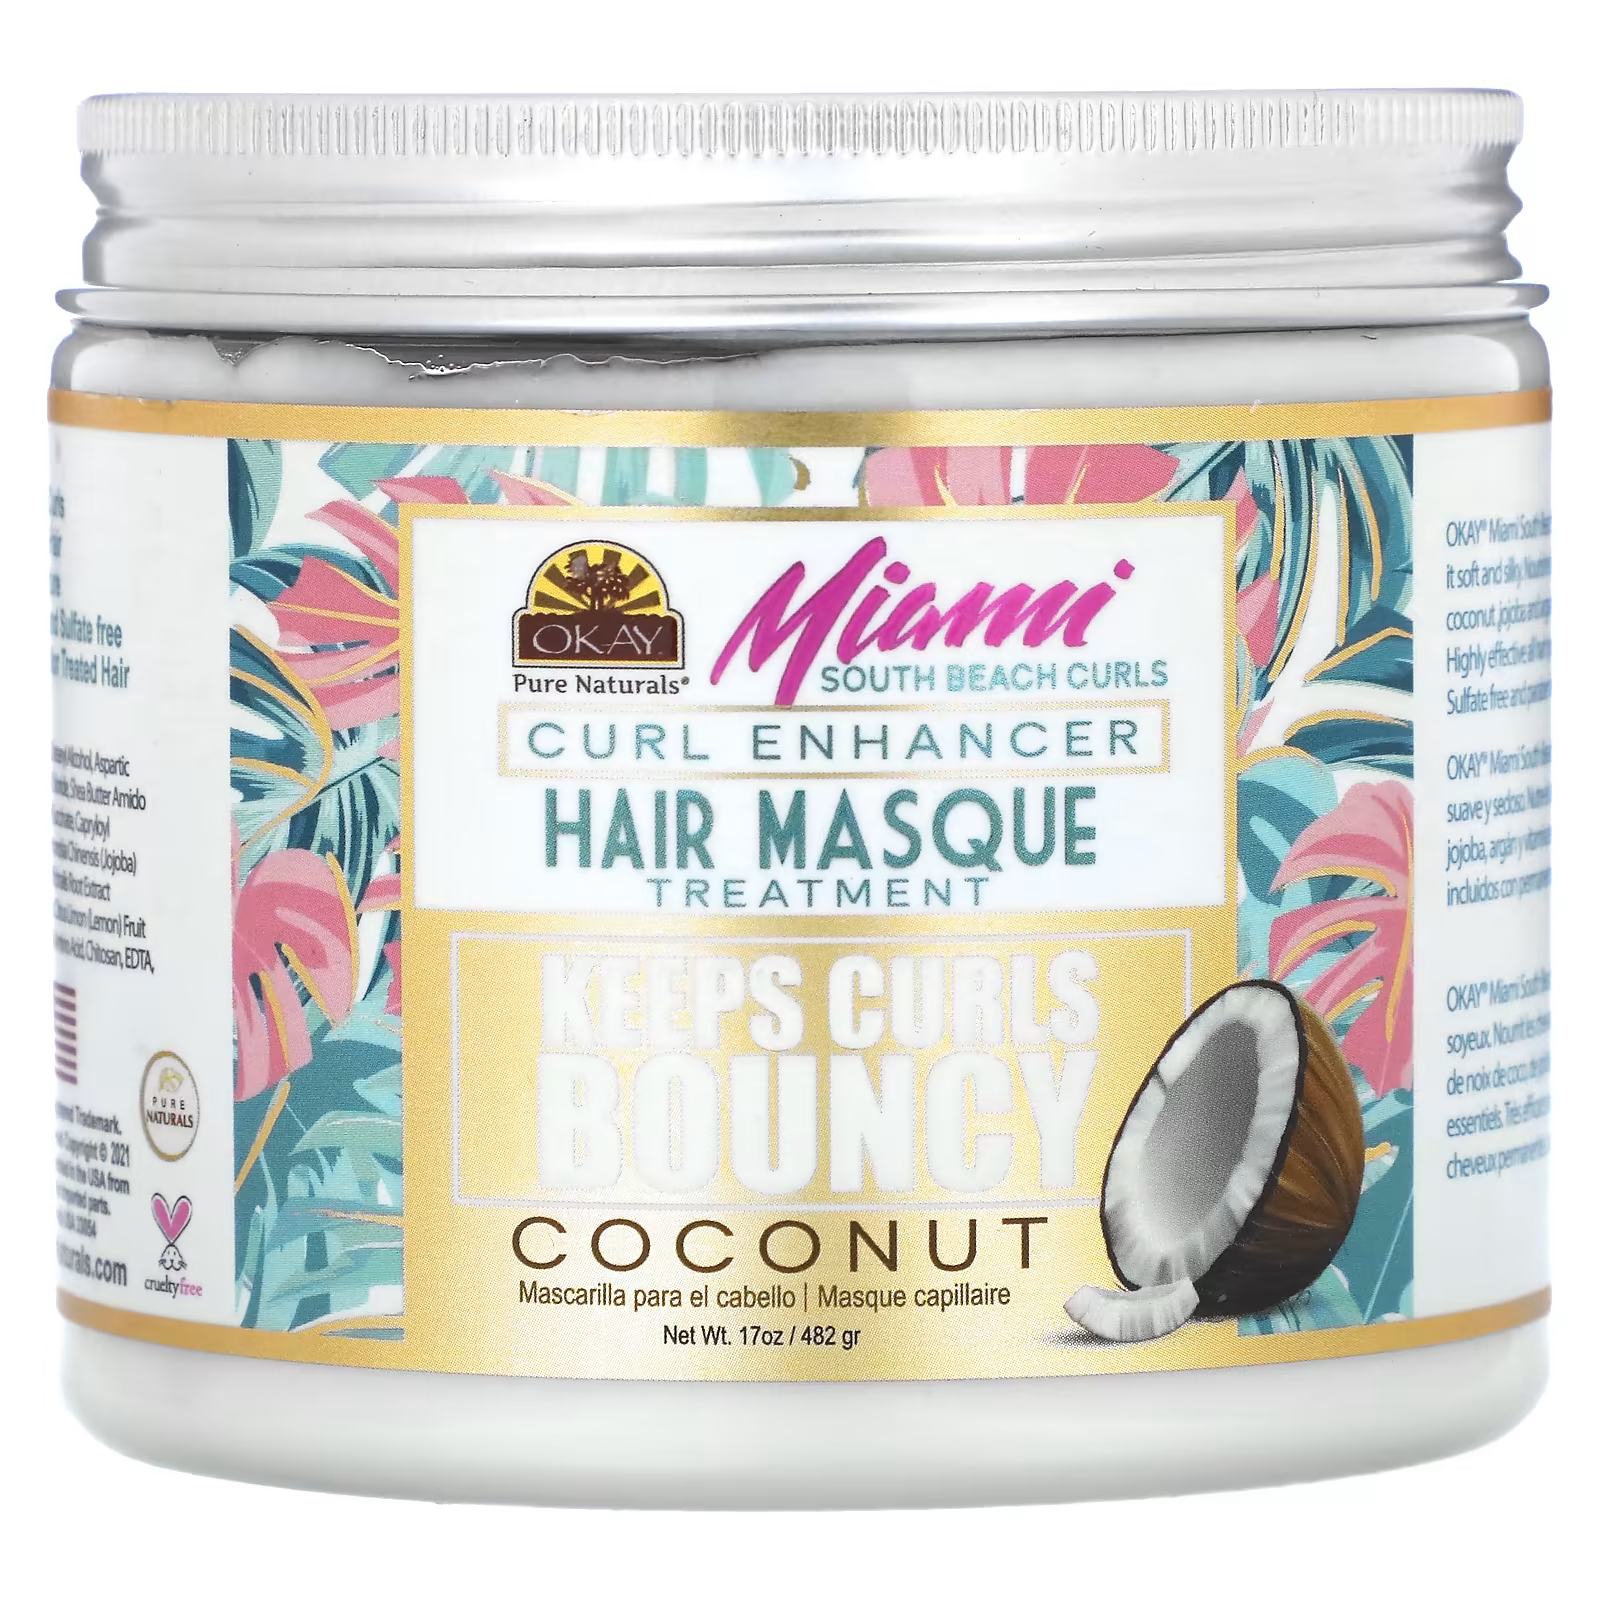 Маска для волос с кокосом Okay Pure Naturals Miami South Beach Curls Curl Enhancer, 482 г